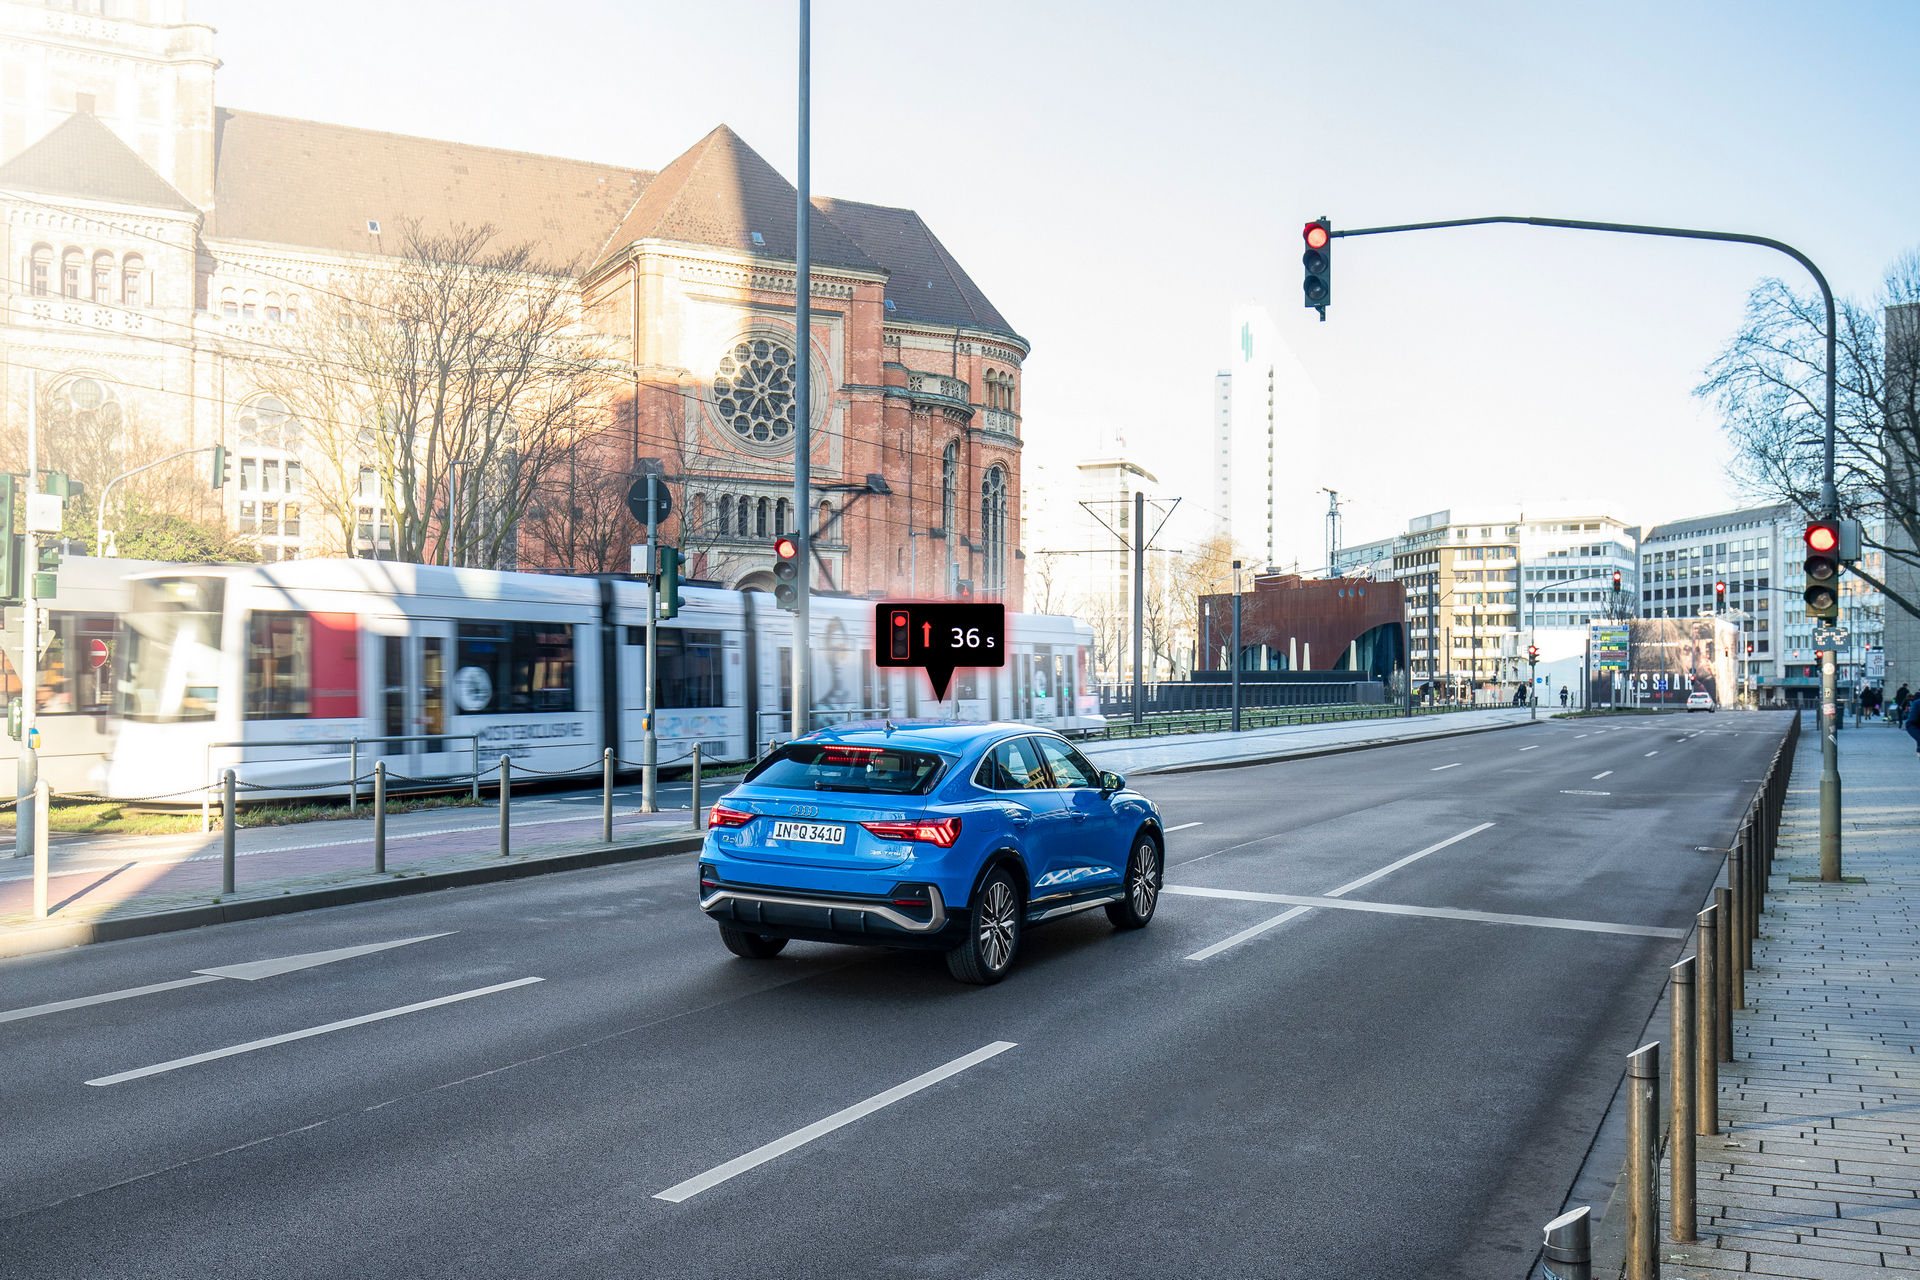 سيارات اودي تبدأ بالتواصل مع إشارات المرور في ألمانيا! 29